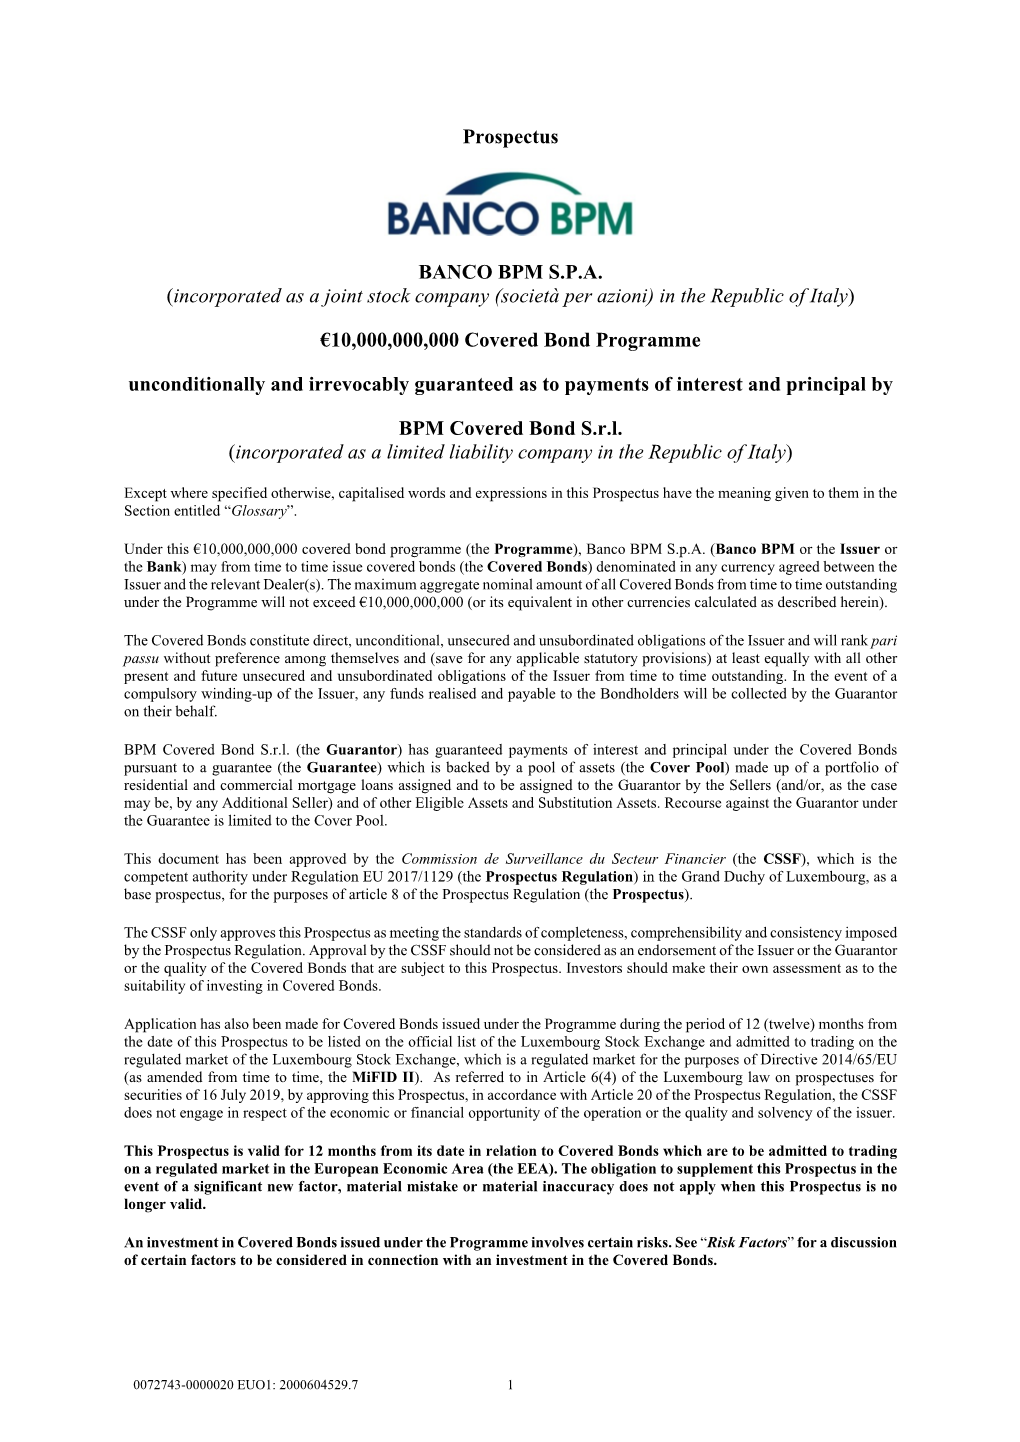 Prospectus BANCO BPM SPA (Incorporated As a Joint Stock Company (Società Per Azioni) in the Republic of Italy)